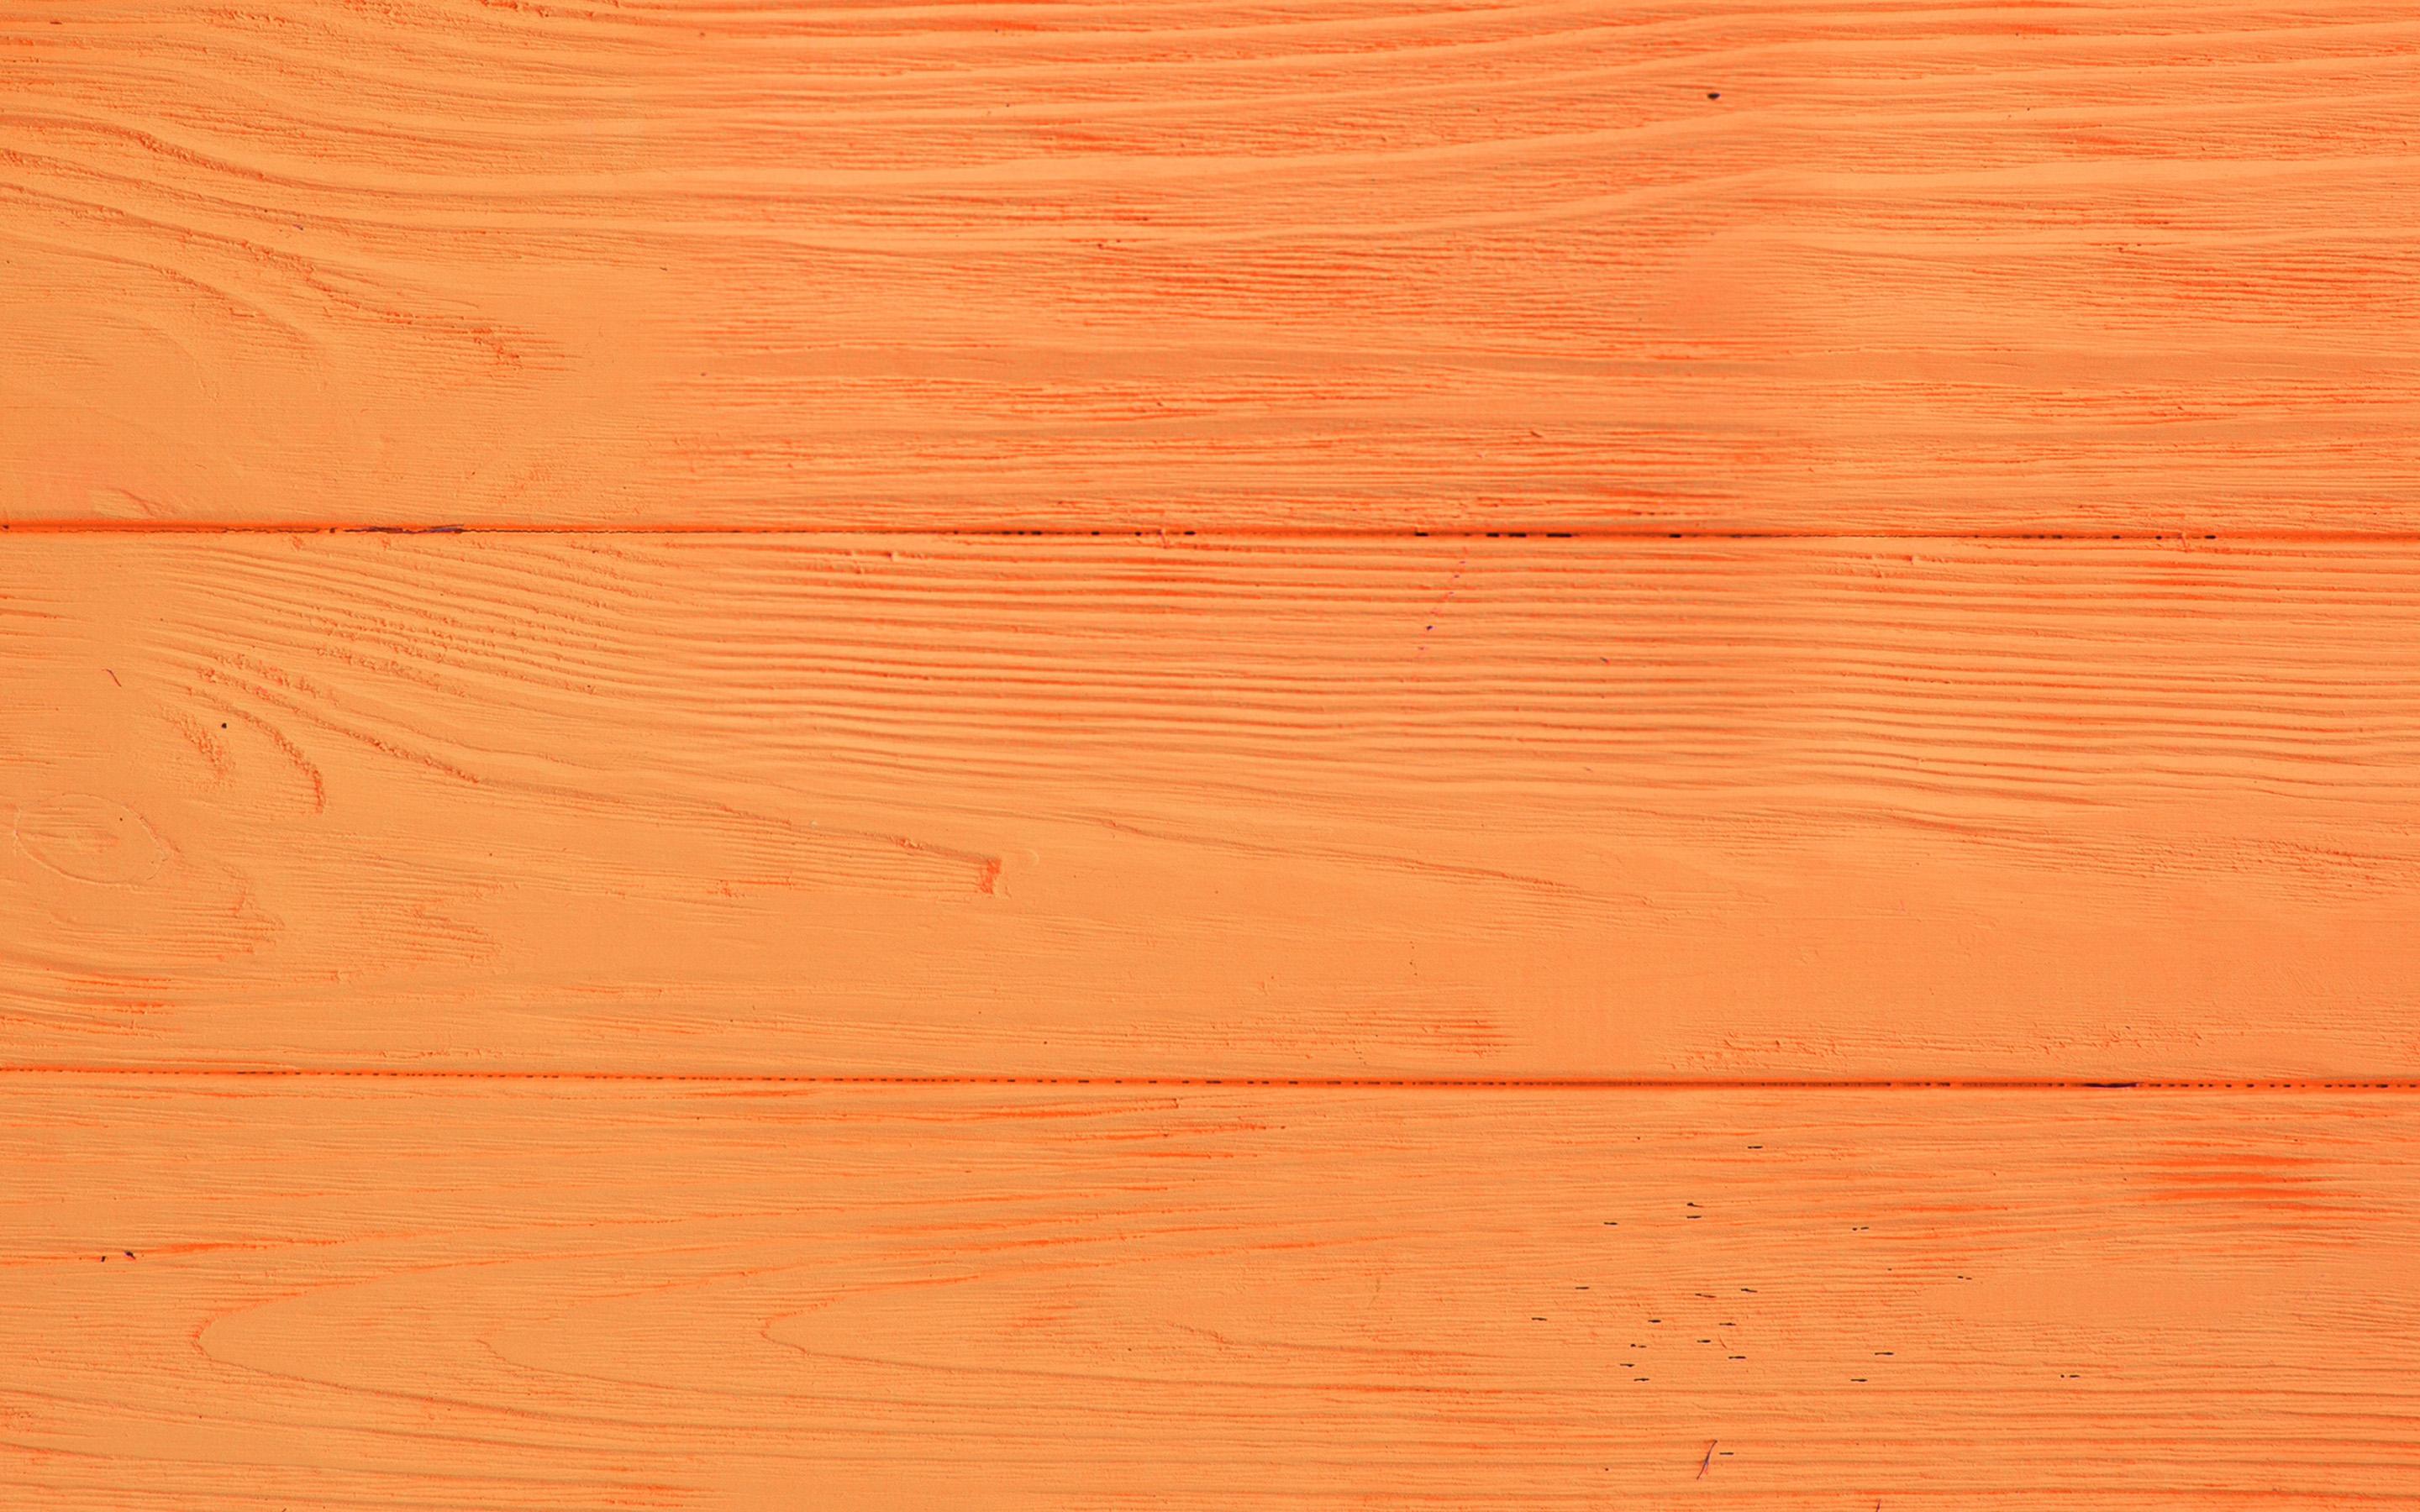 Hình nền gỗ cam mang đến sự tươi mới và mát mẻ, tạo điểm nhấn hoàn hảo cho không gian làm việc hoặc nghỉ ngơi của bạn.